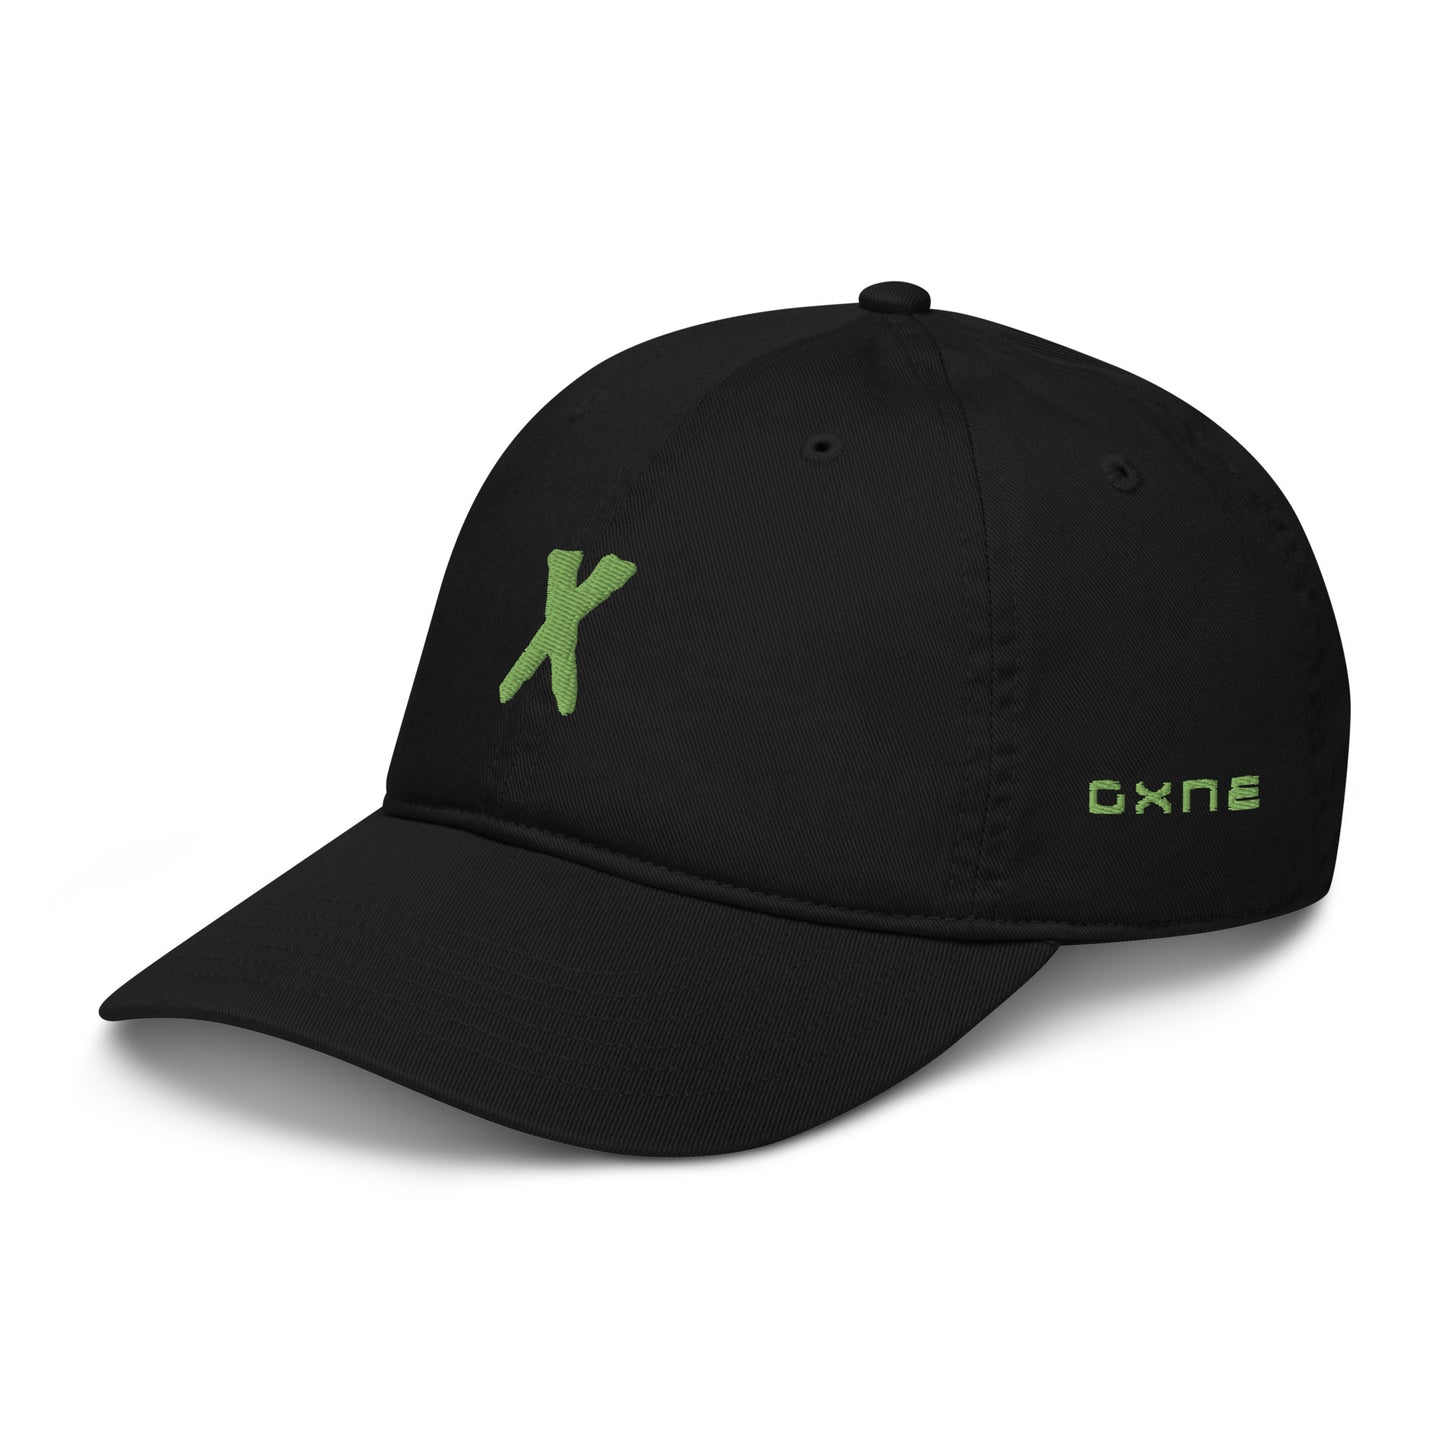 X Dad Hat